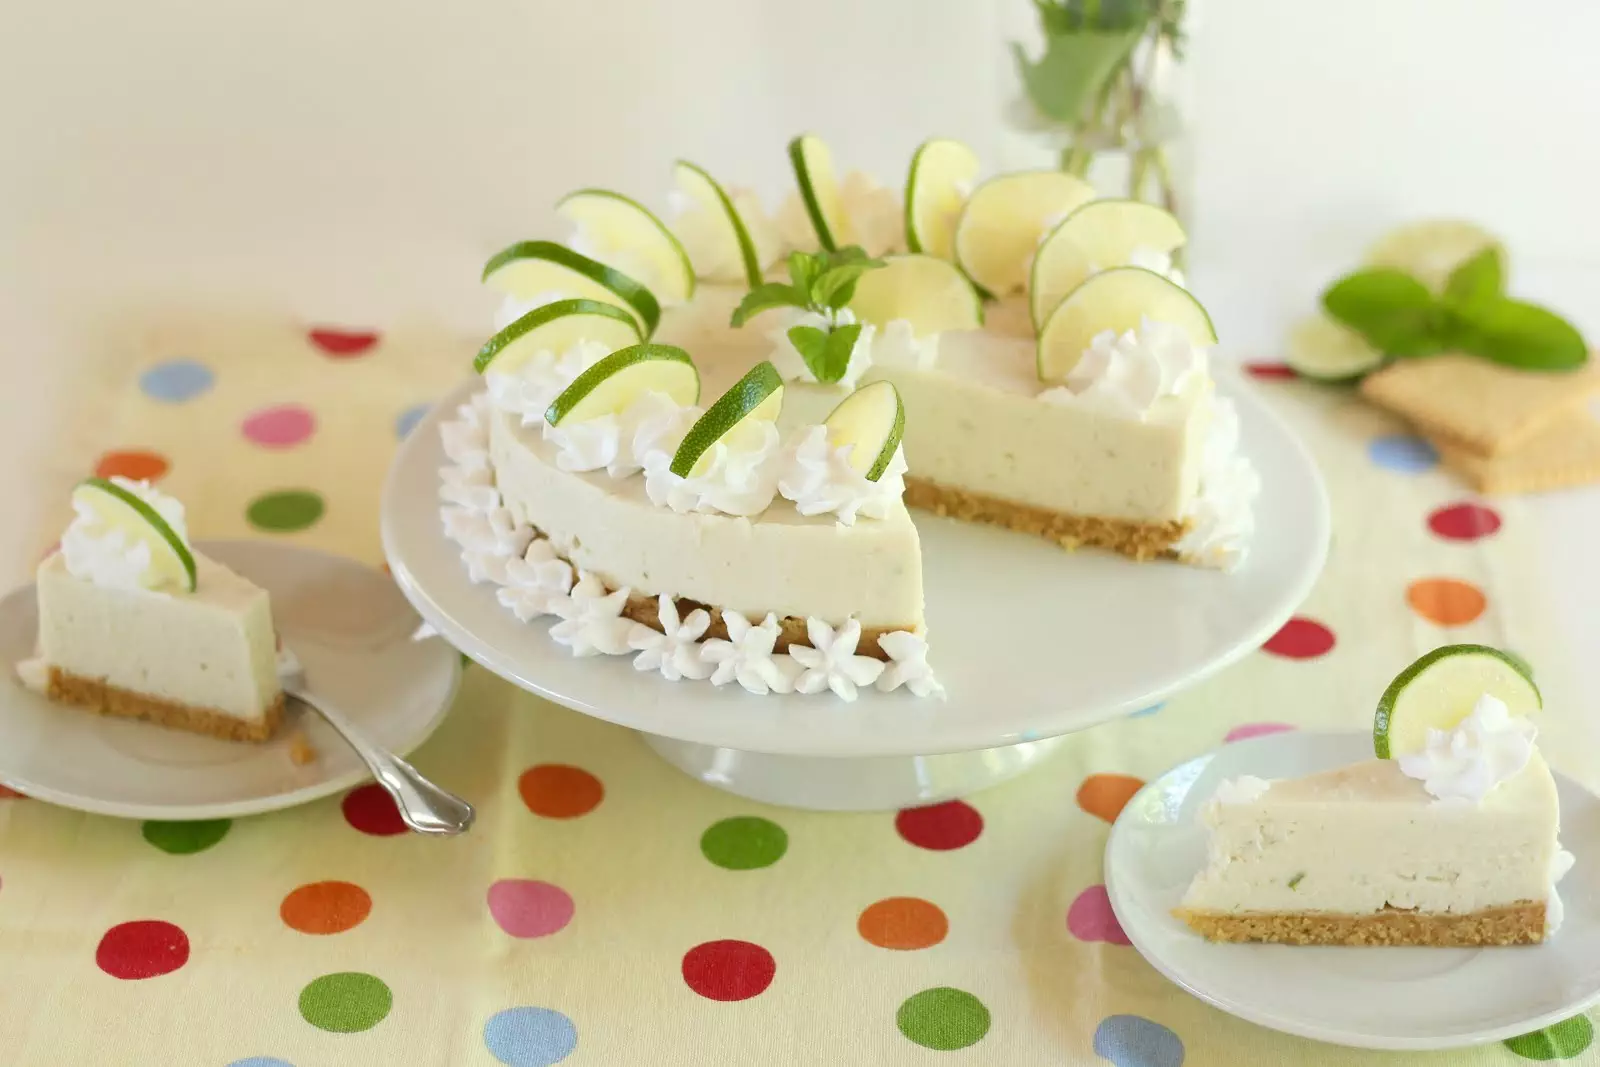 Erfrischende Limetten-Joghurt-Torte ohne Backen – klassisch und vegan | Rezept und Video